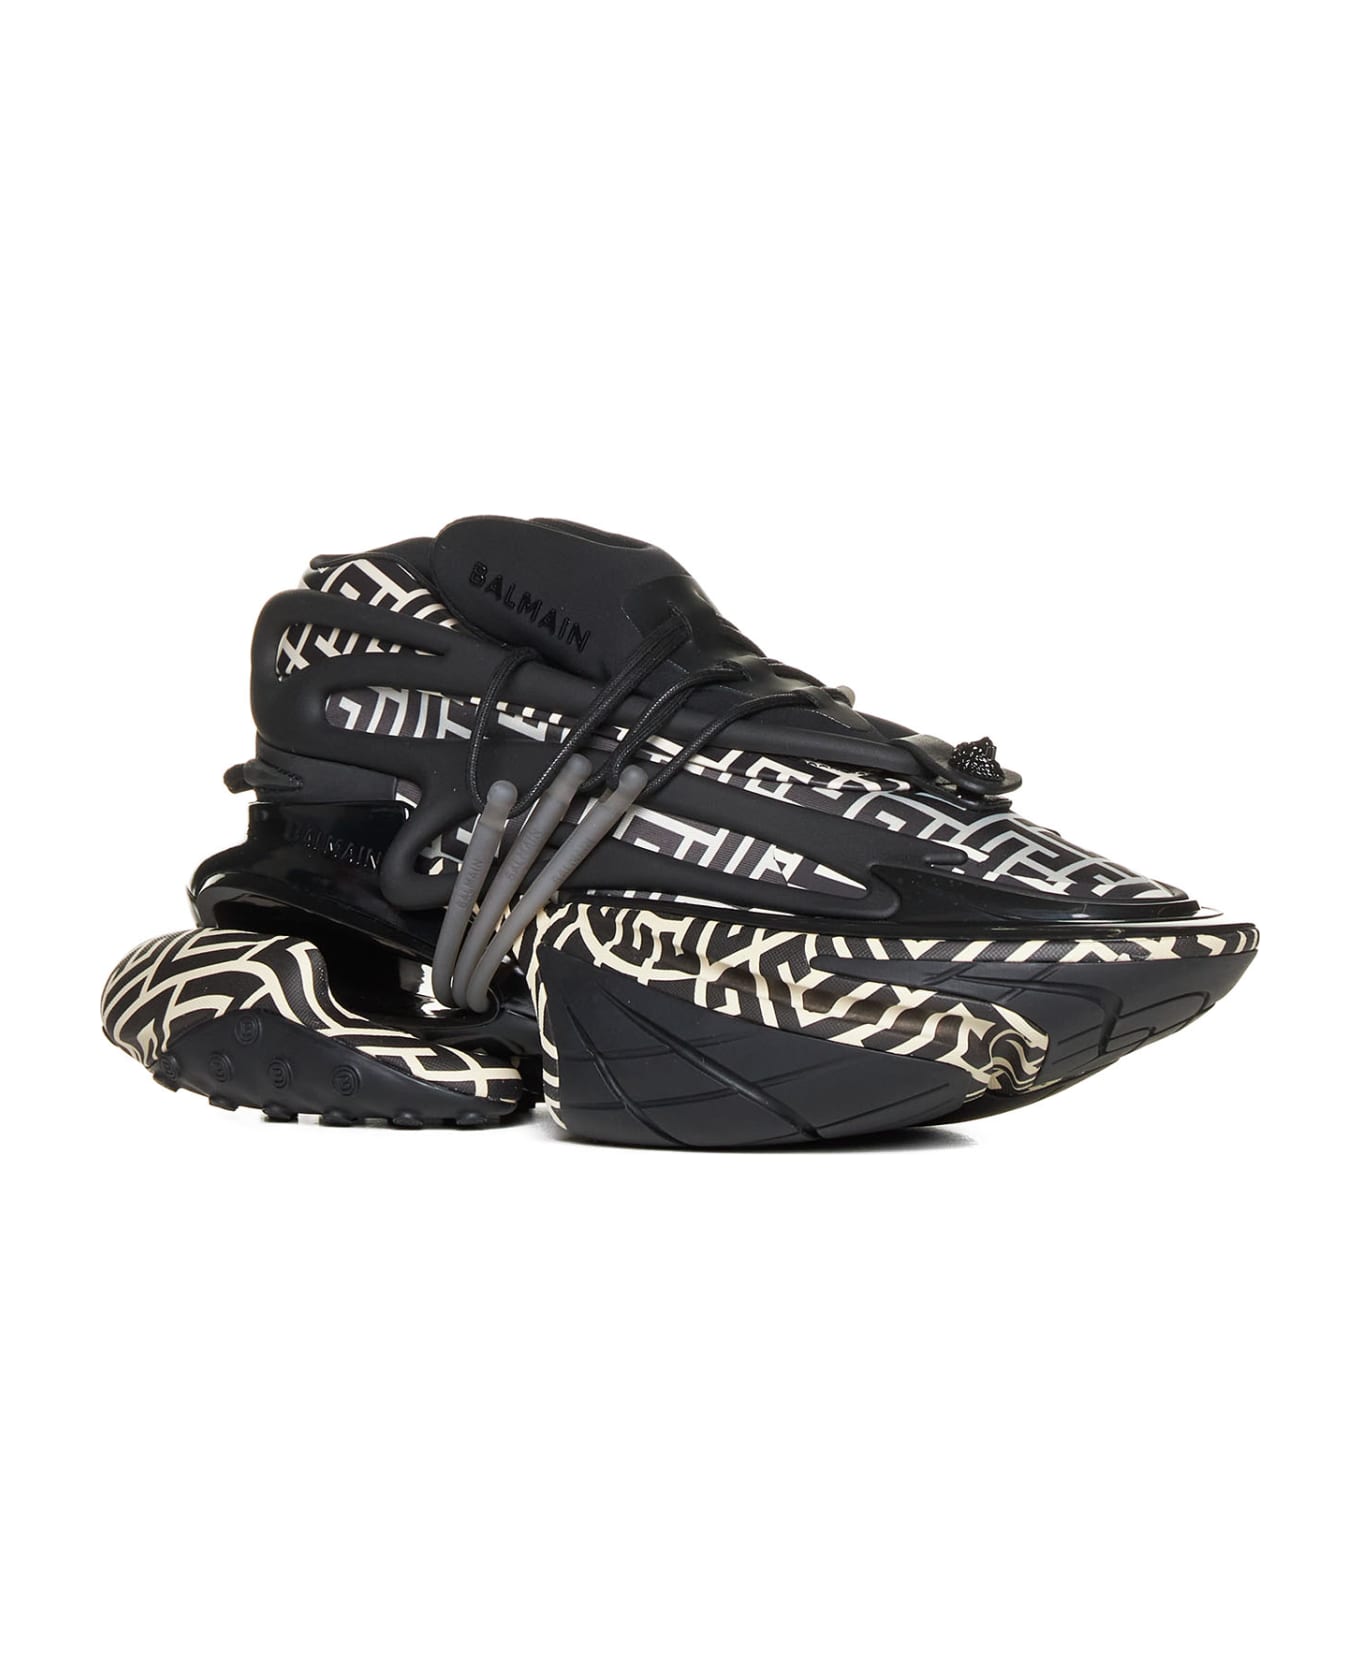 Balmain Unicorn Lace-up Sneakers - Ivoire noir